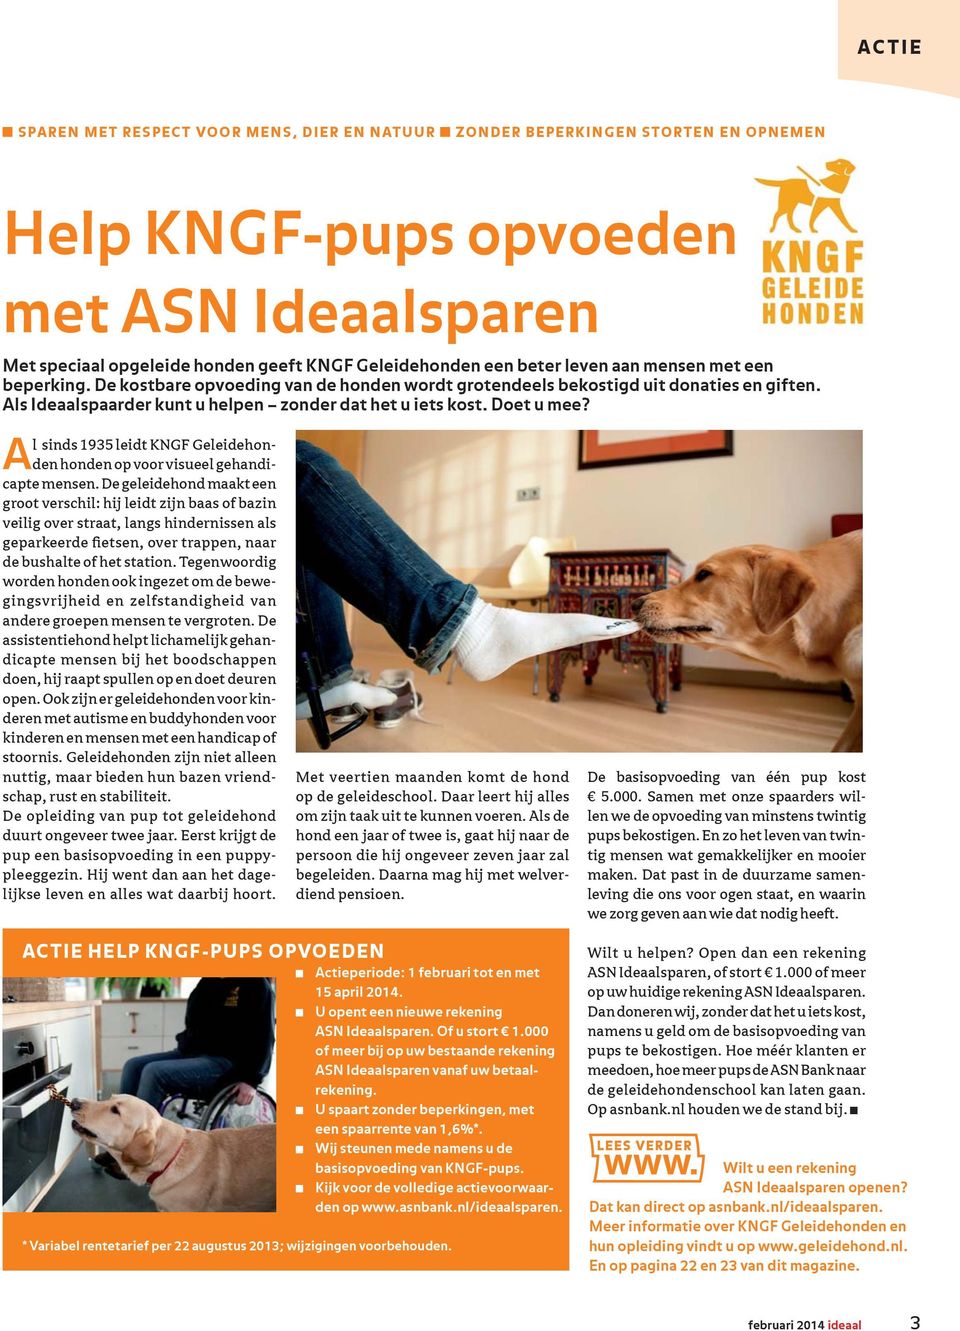 Al sinds 1935 leidt KNGF Geleidehonden honden op voor visueel gehandicapte mensen.